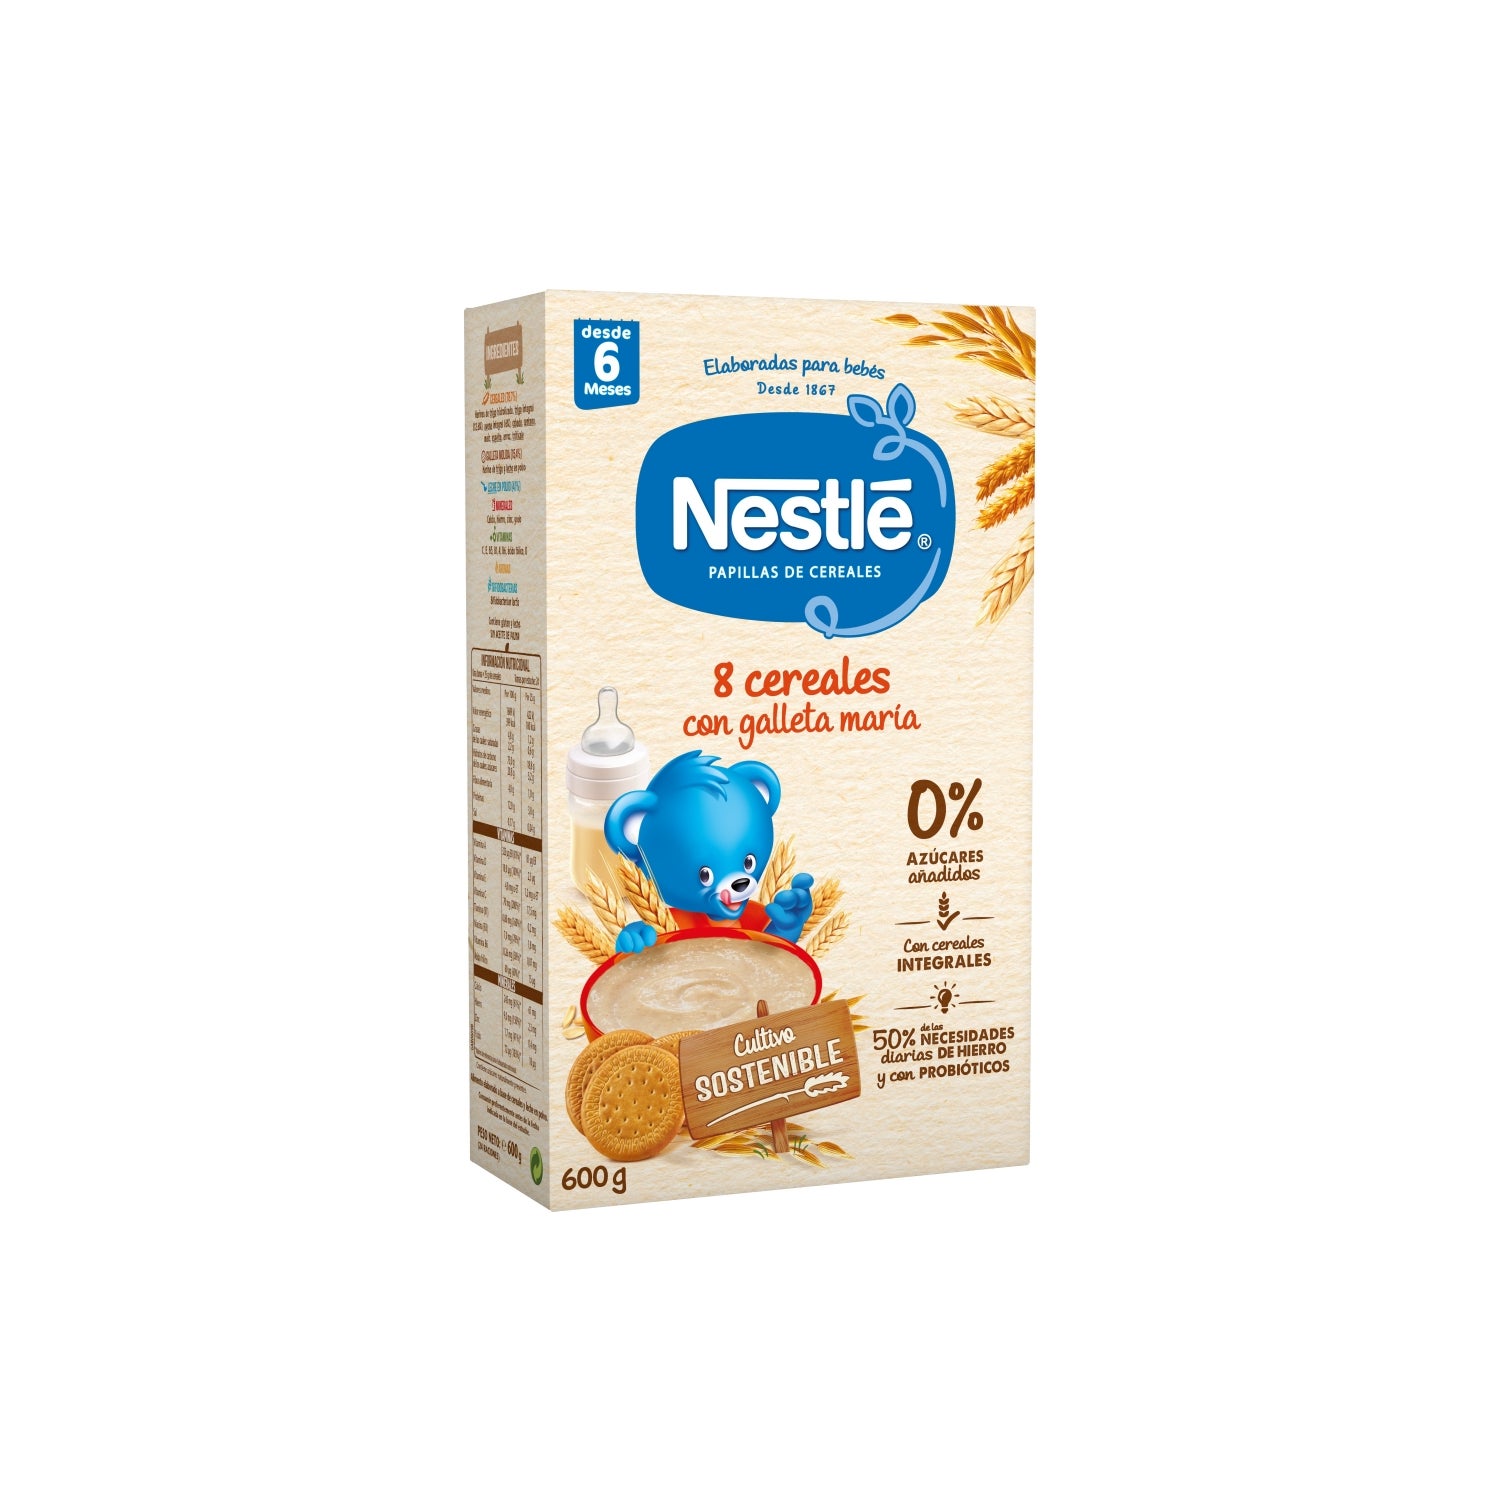 Baby cereals 8 céréales miel céréales infantiles 250g